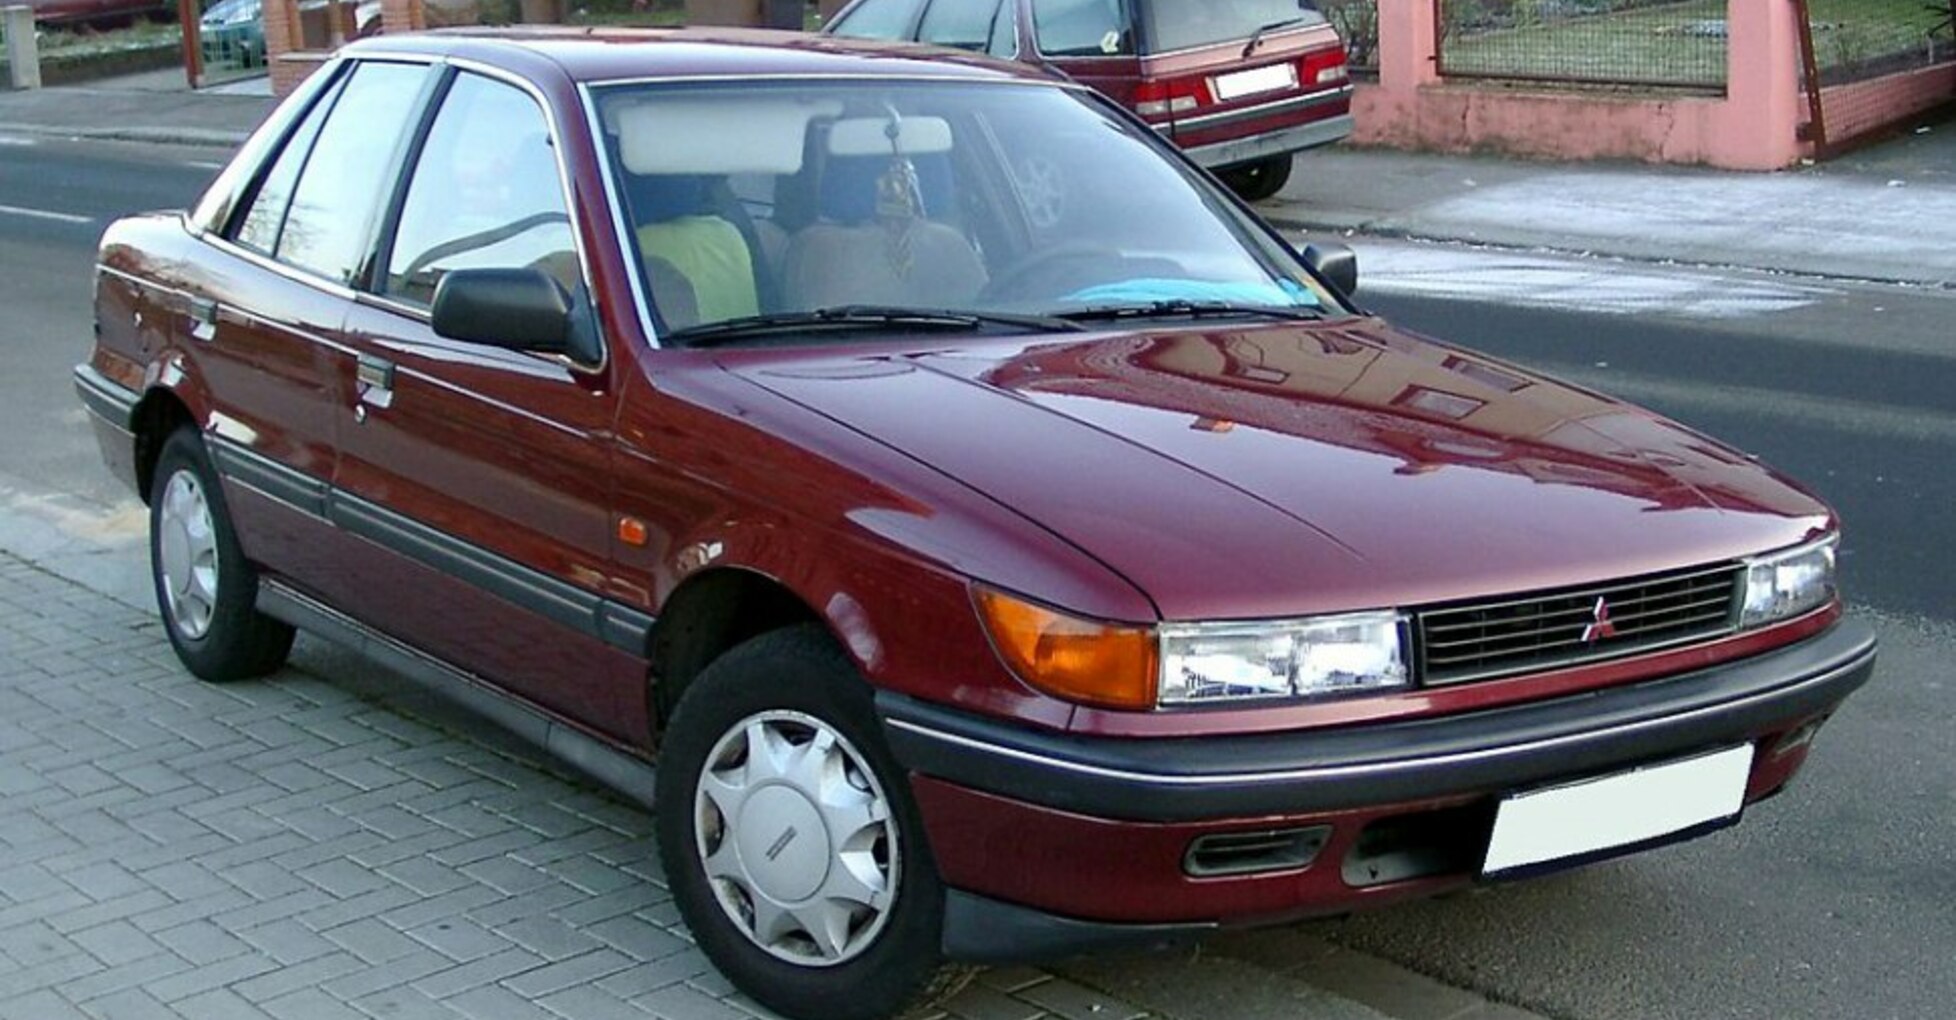 Mitsubishi Lancer IV Hatchback 1.6 16V (113 Hp) 1992, 1993, 1994 